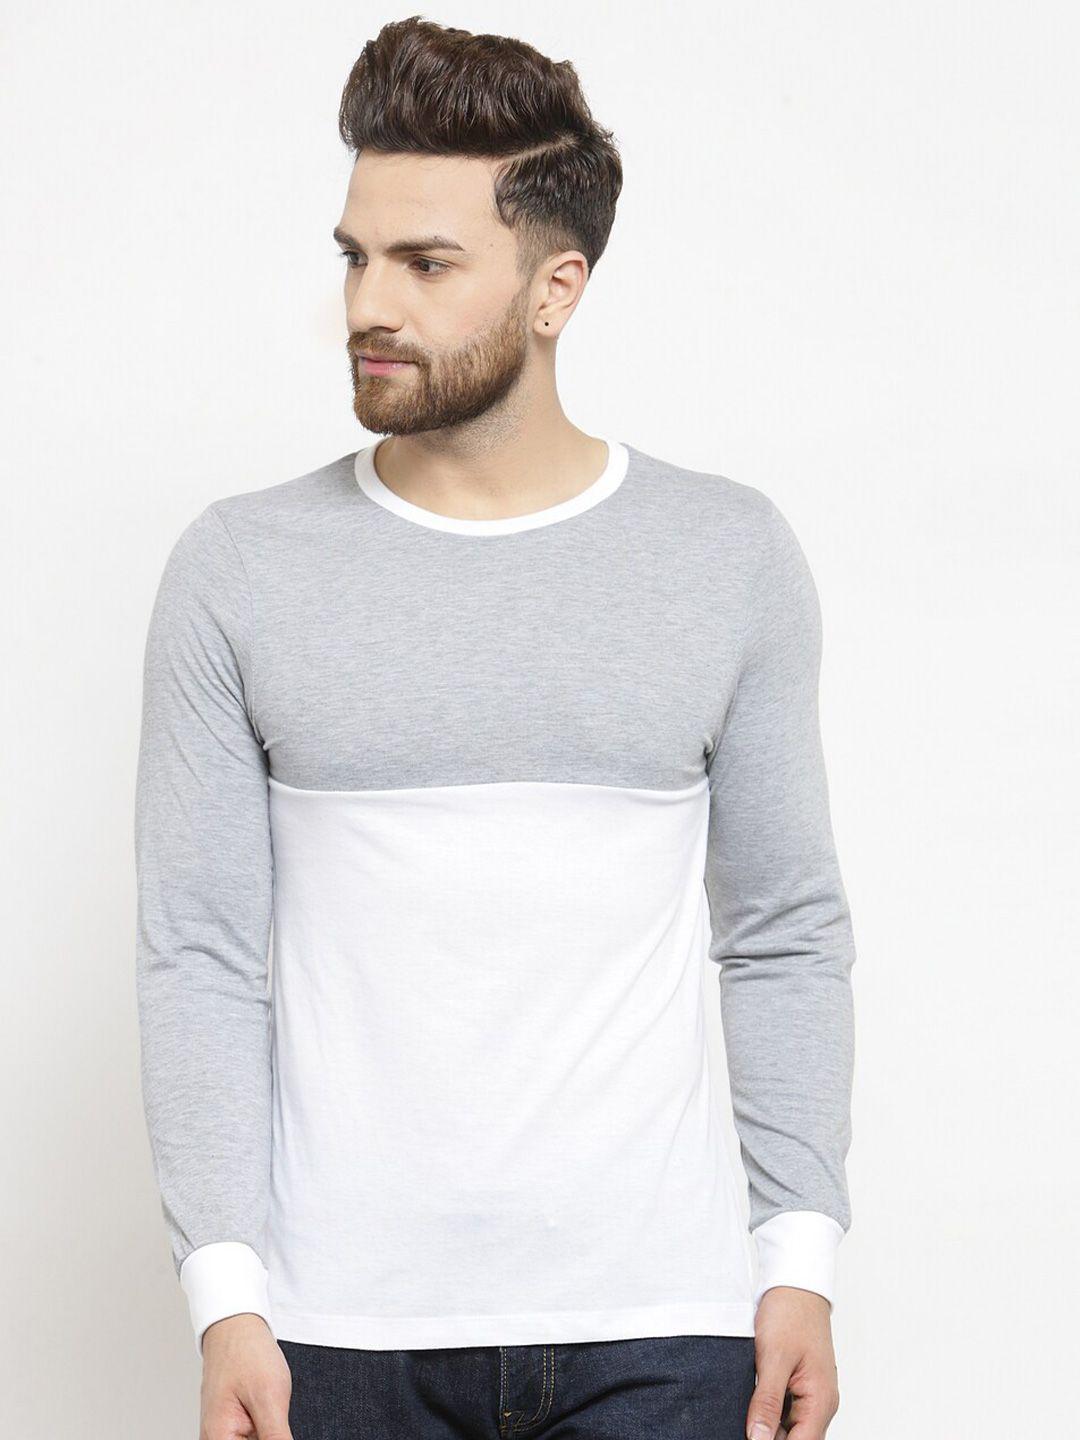 kalt-men-grey-melange-&-white-colourblocked-t-shirt